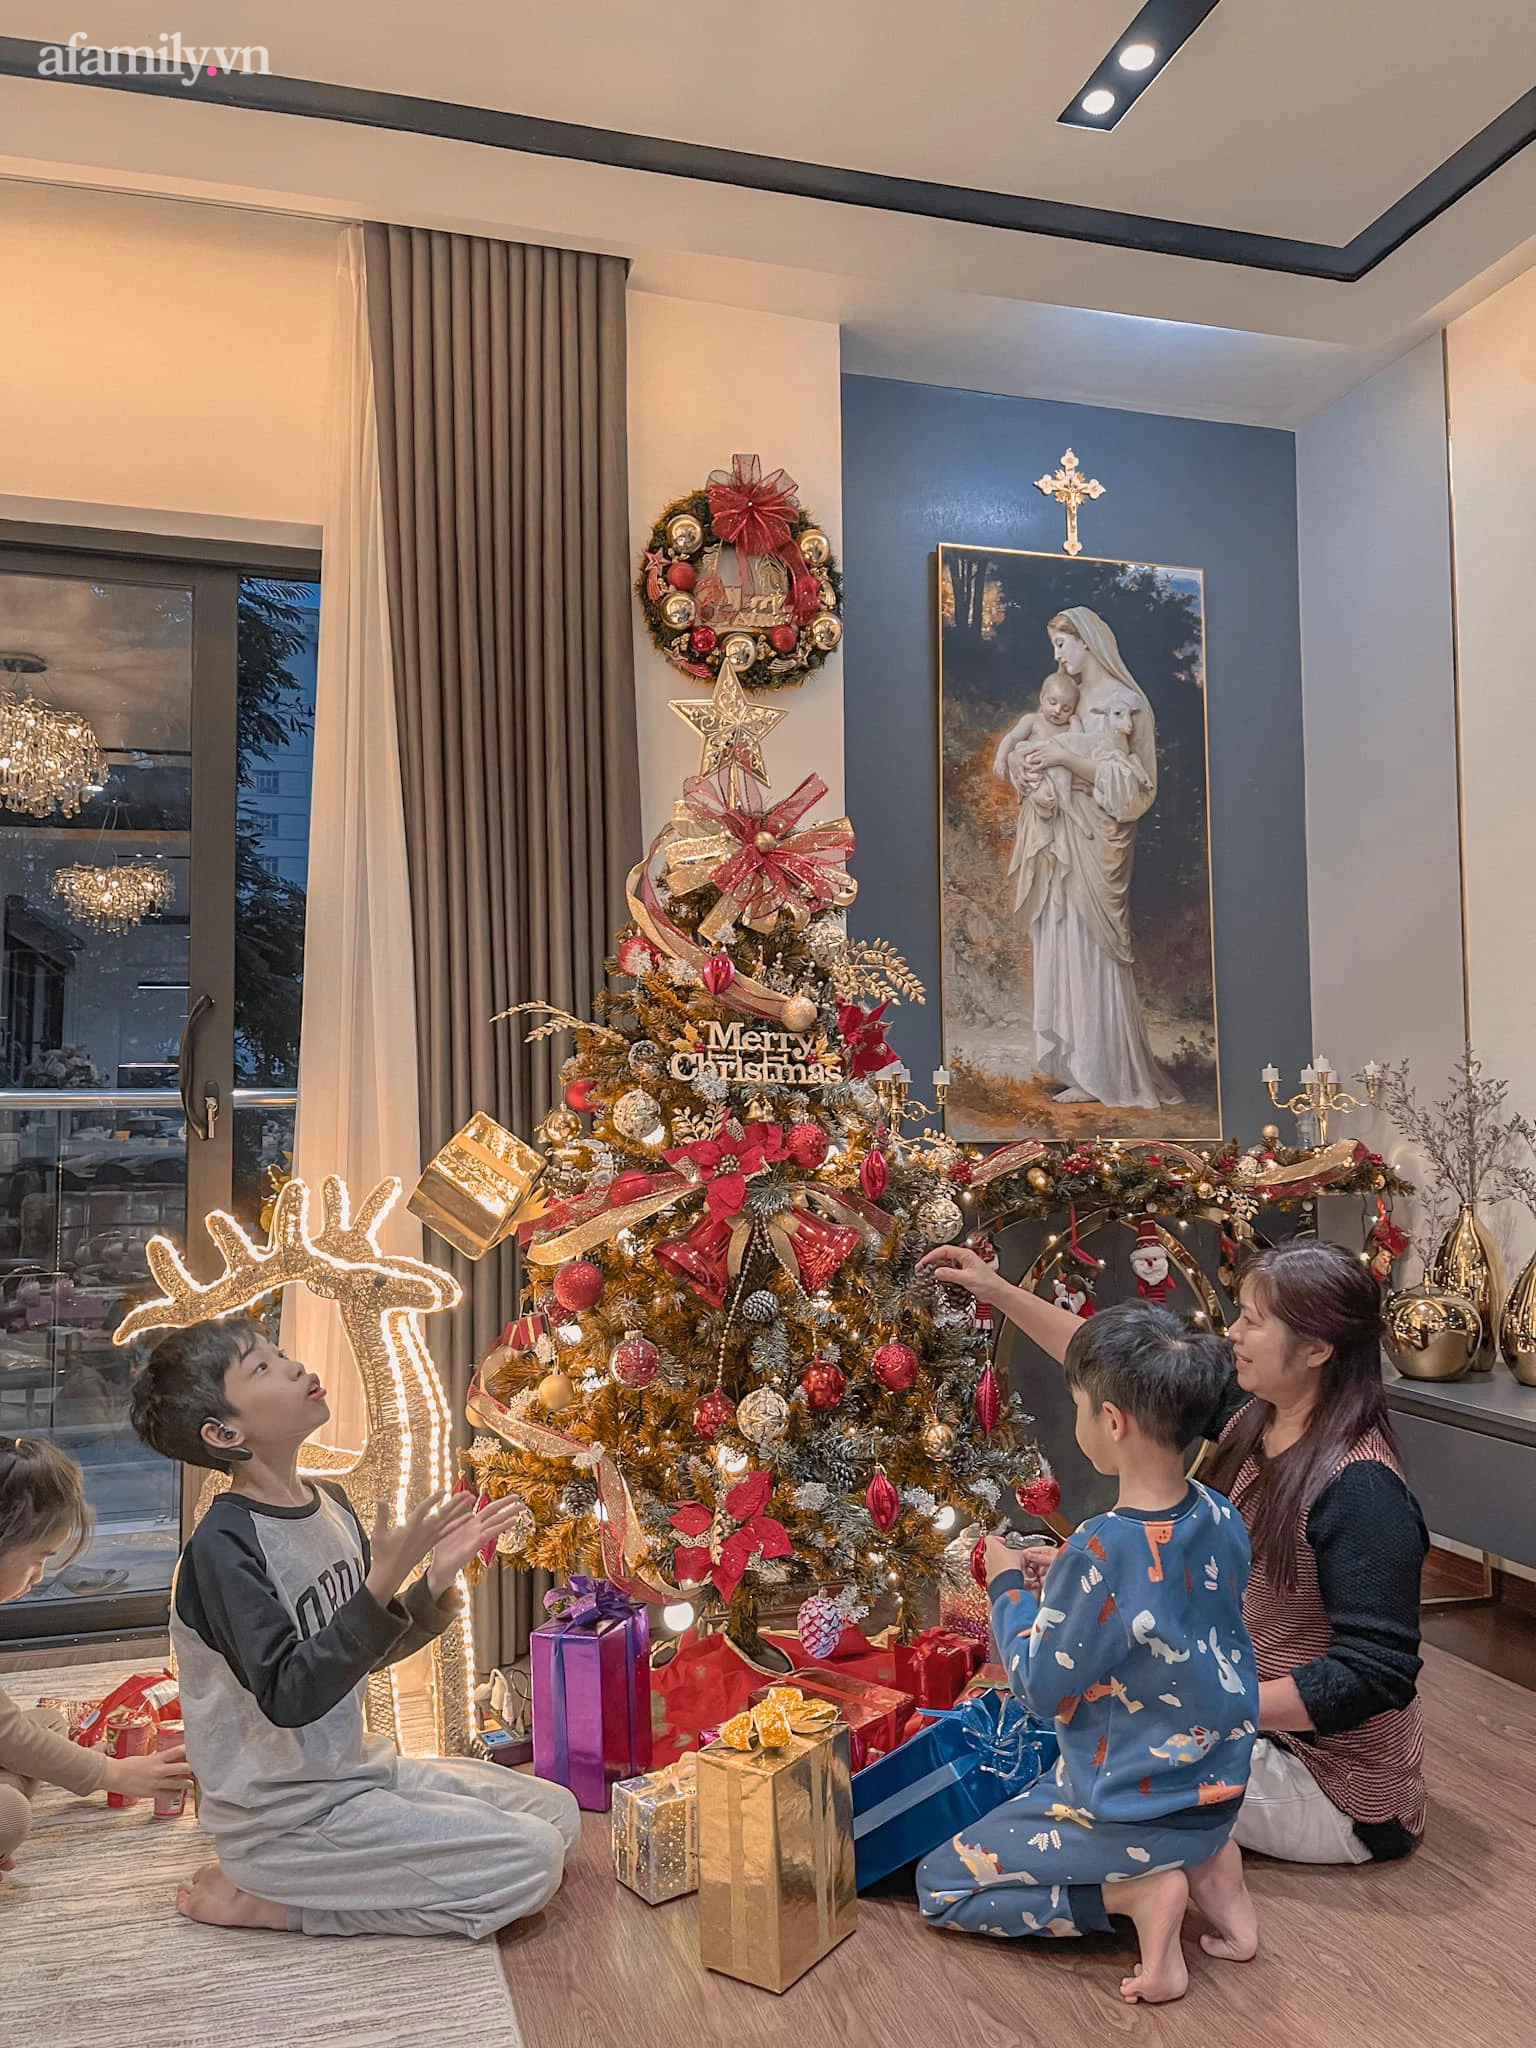 Trang trí nhà đón Giáng sinh ấm cúng của gia đình 3 thế hệ ở Hà Nội, chi phí 10 triệu đồng - Ảnh 9.